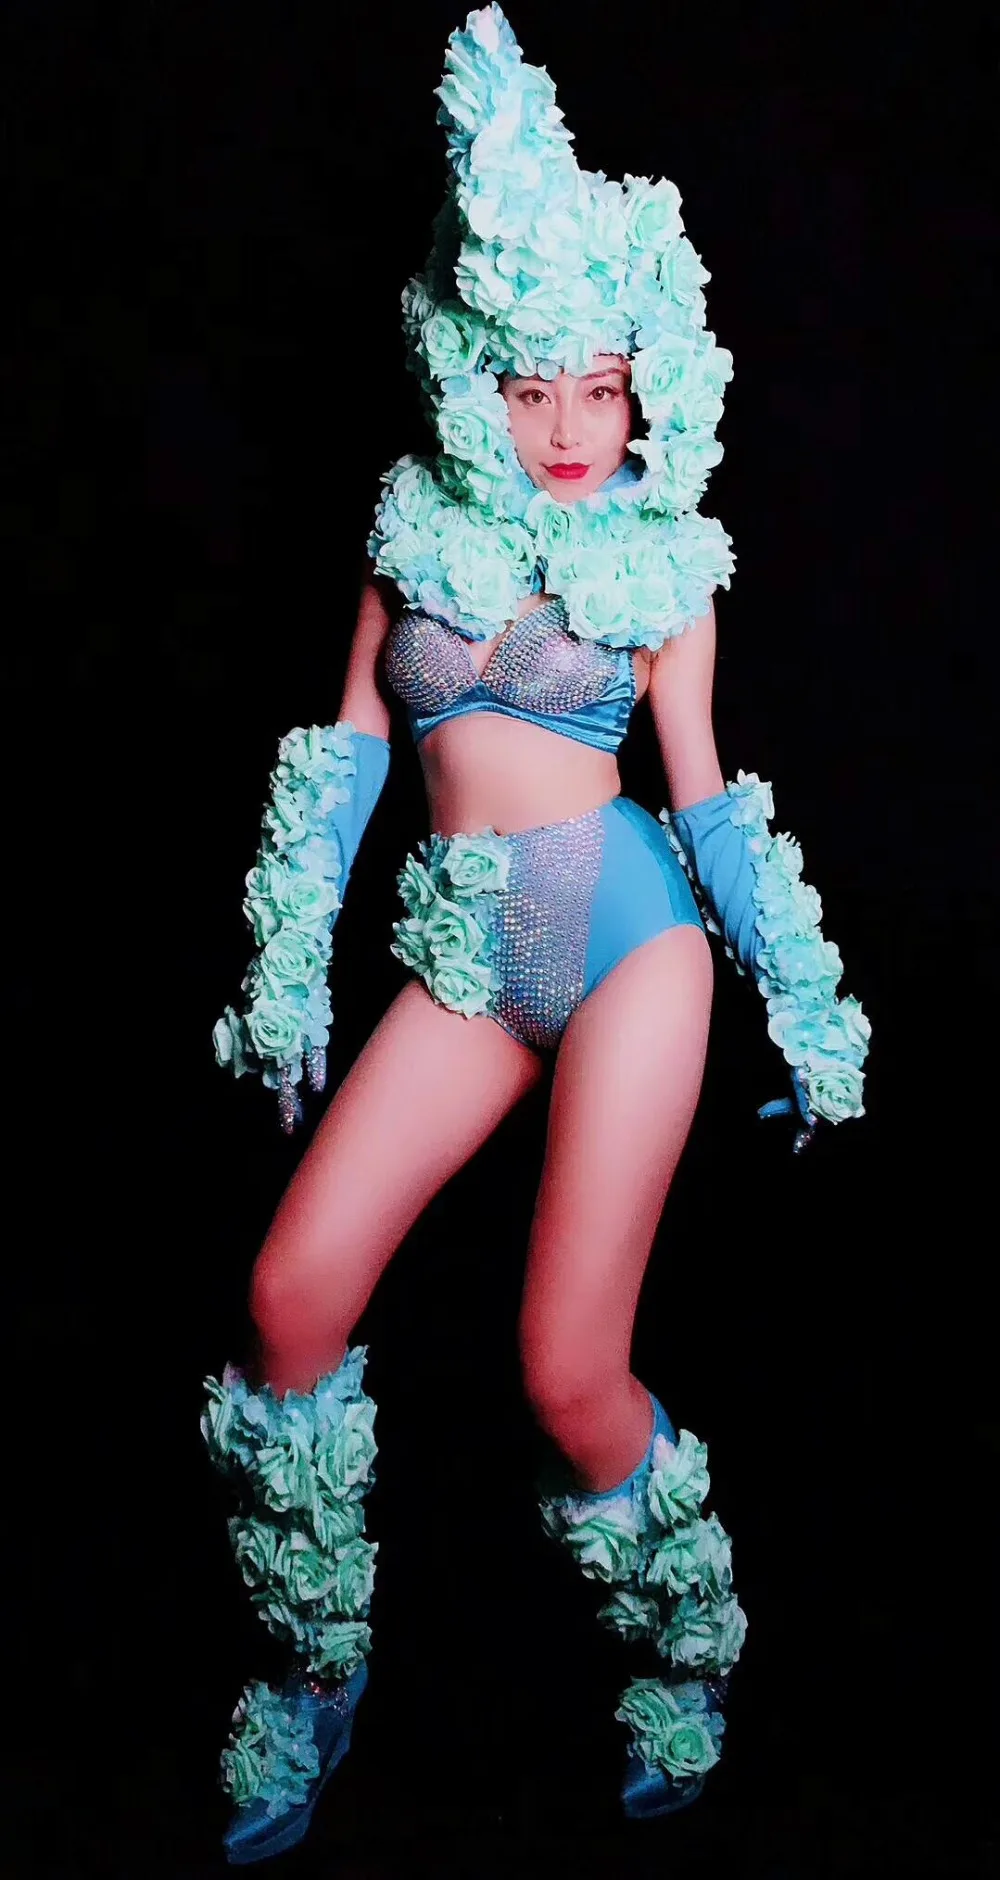 WomenNew синий горный хрусталь цветок украшения набор стрейч сексуальный комплект Пром наряд для вечеринки танцевальное шоу Команда Одежда